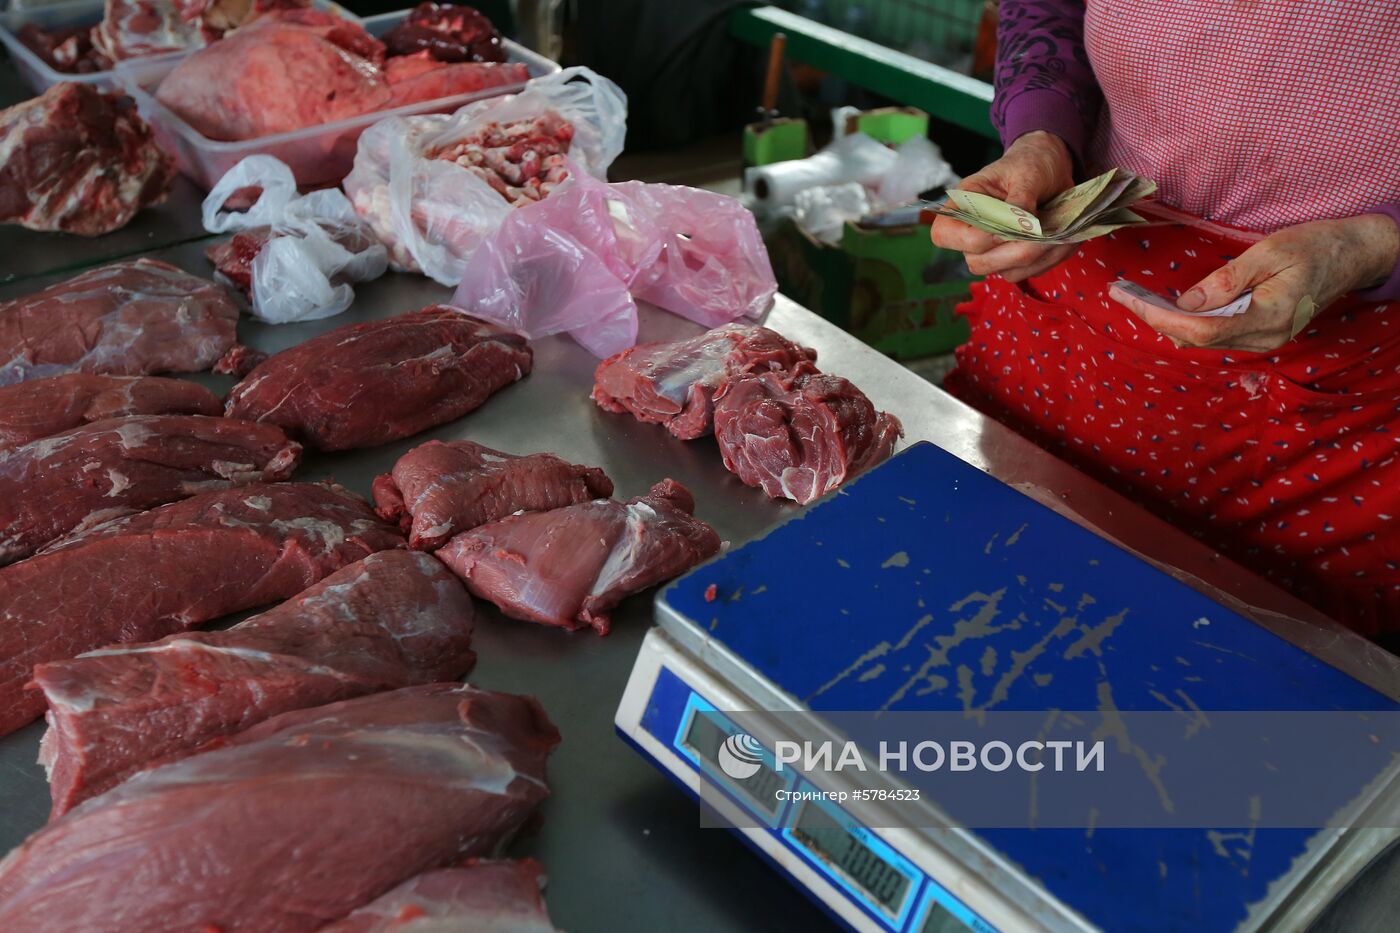 Продовольственный рынок в Киеве